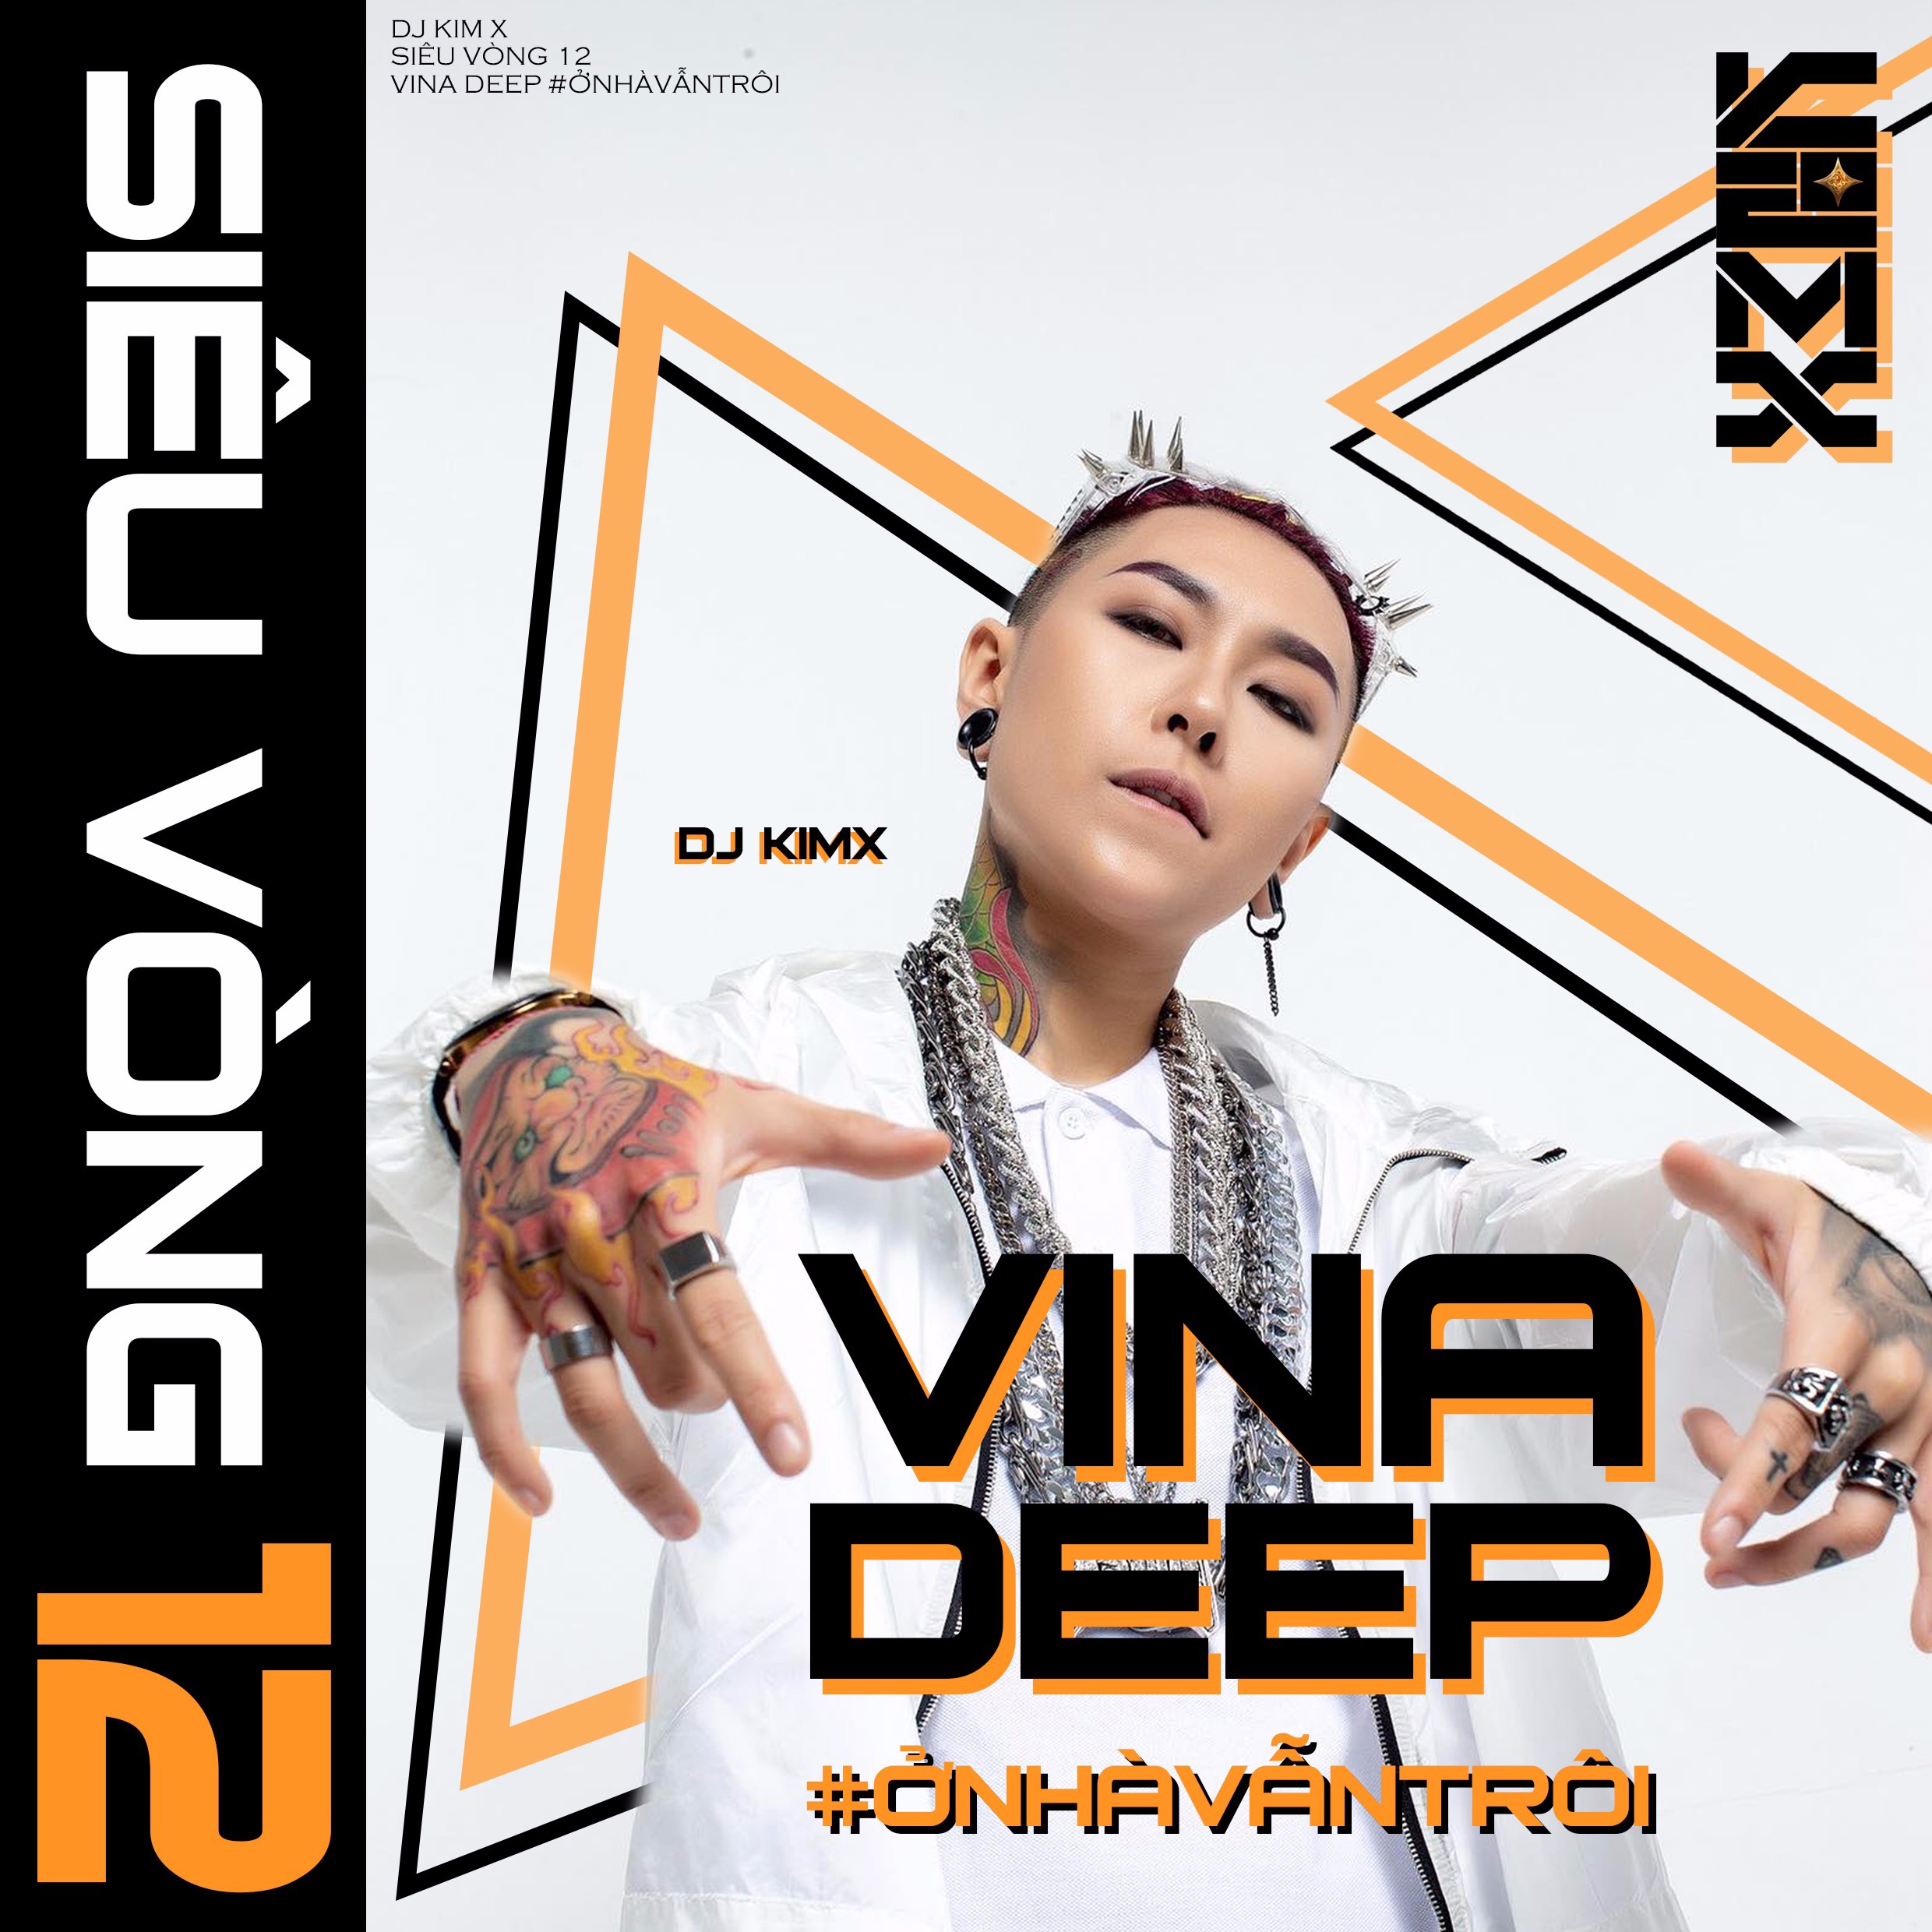 ດາວໂຫລດ #ỞNHÀVẪNTRÔI --- DJ KIMX --- MIXSET KIMX SIÊU VÒNG 12 --- VINADEEP